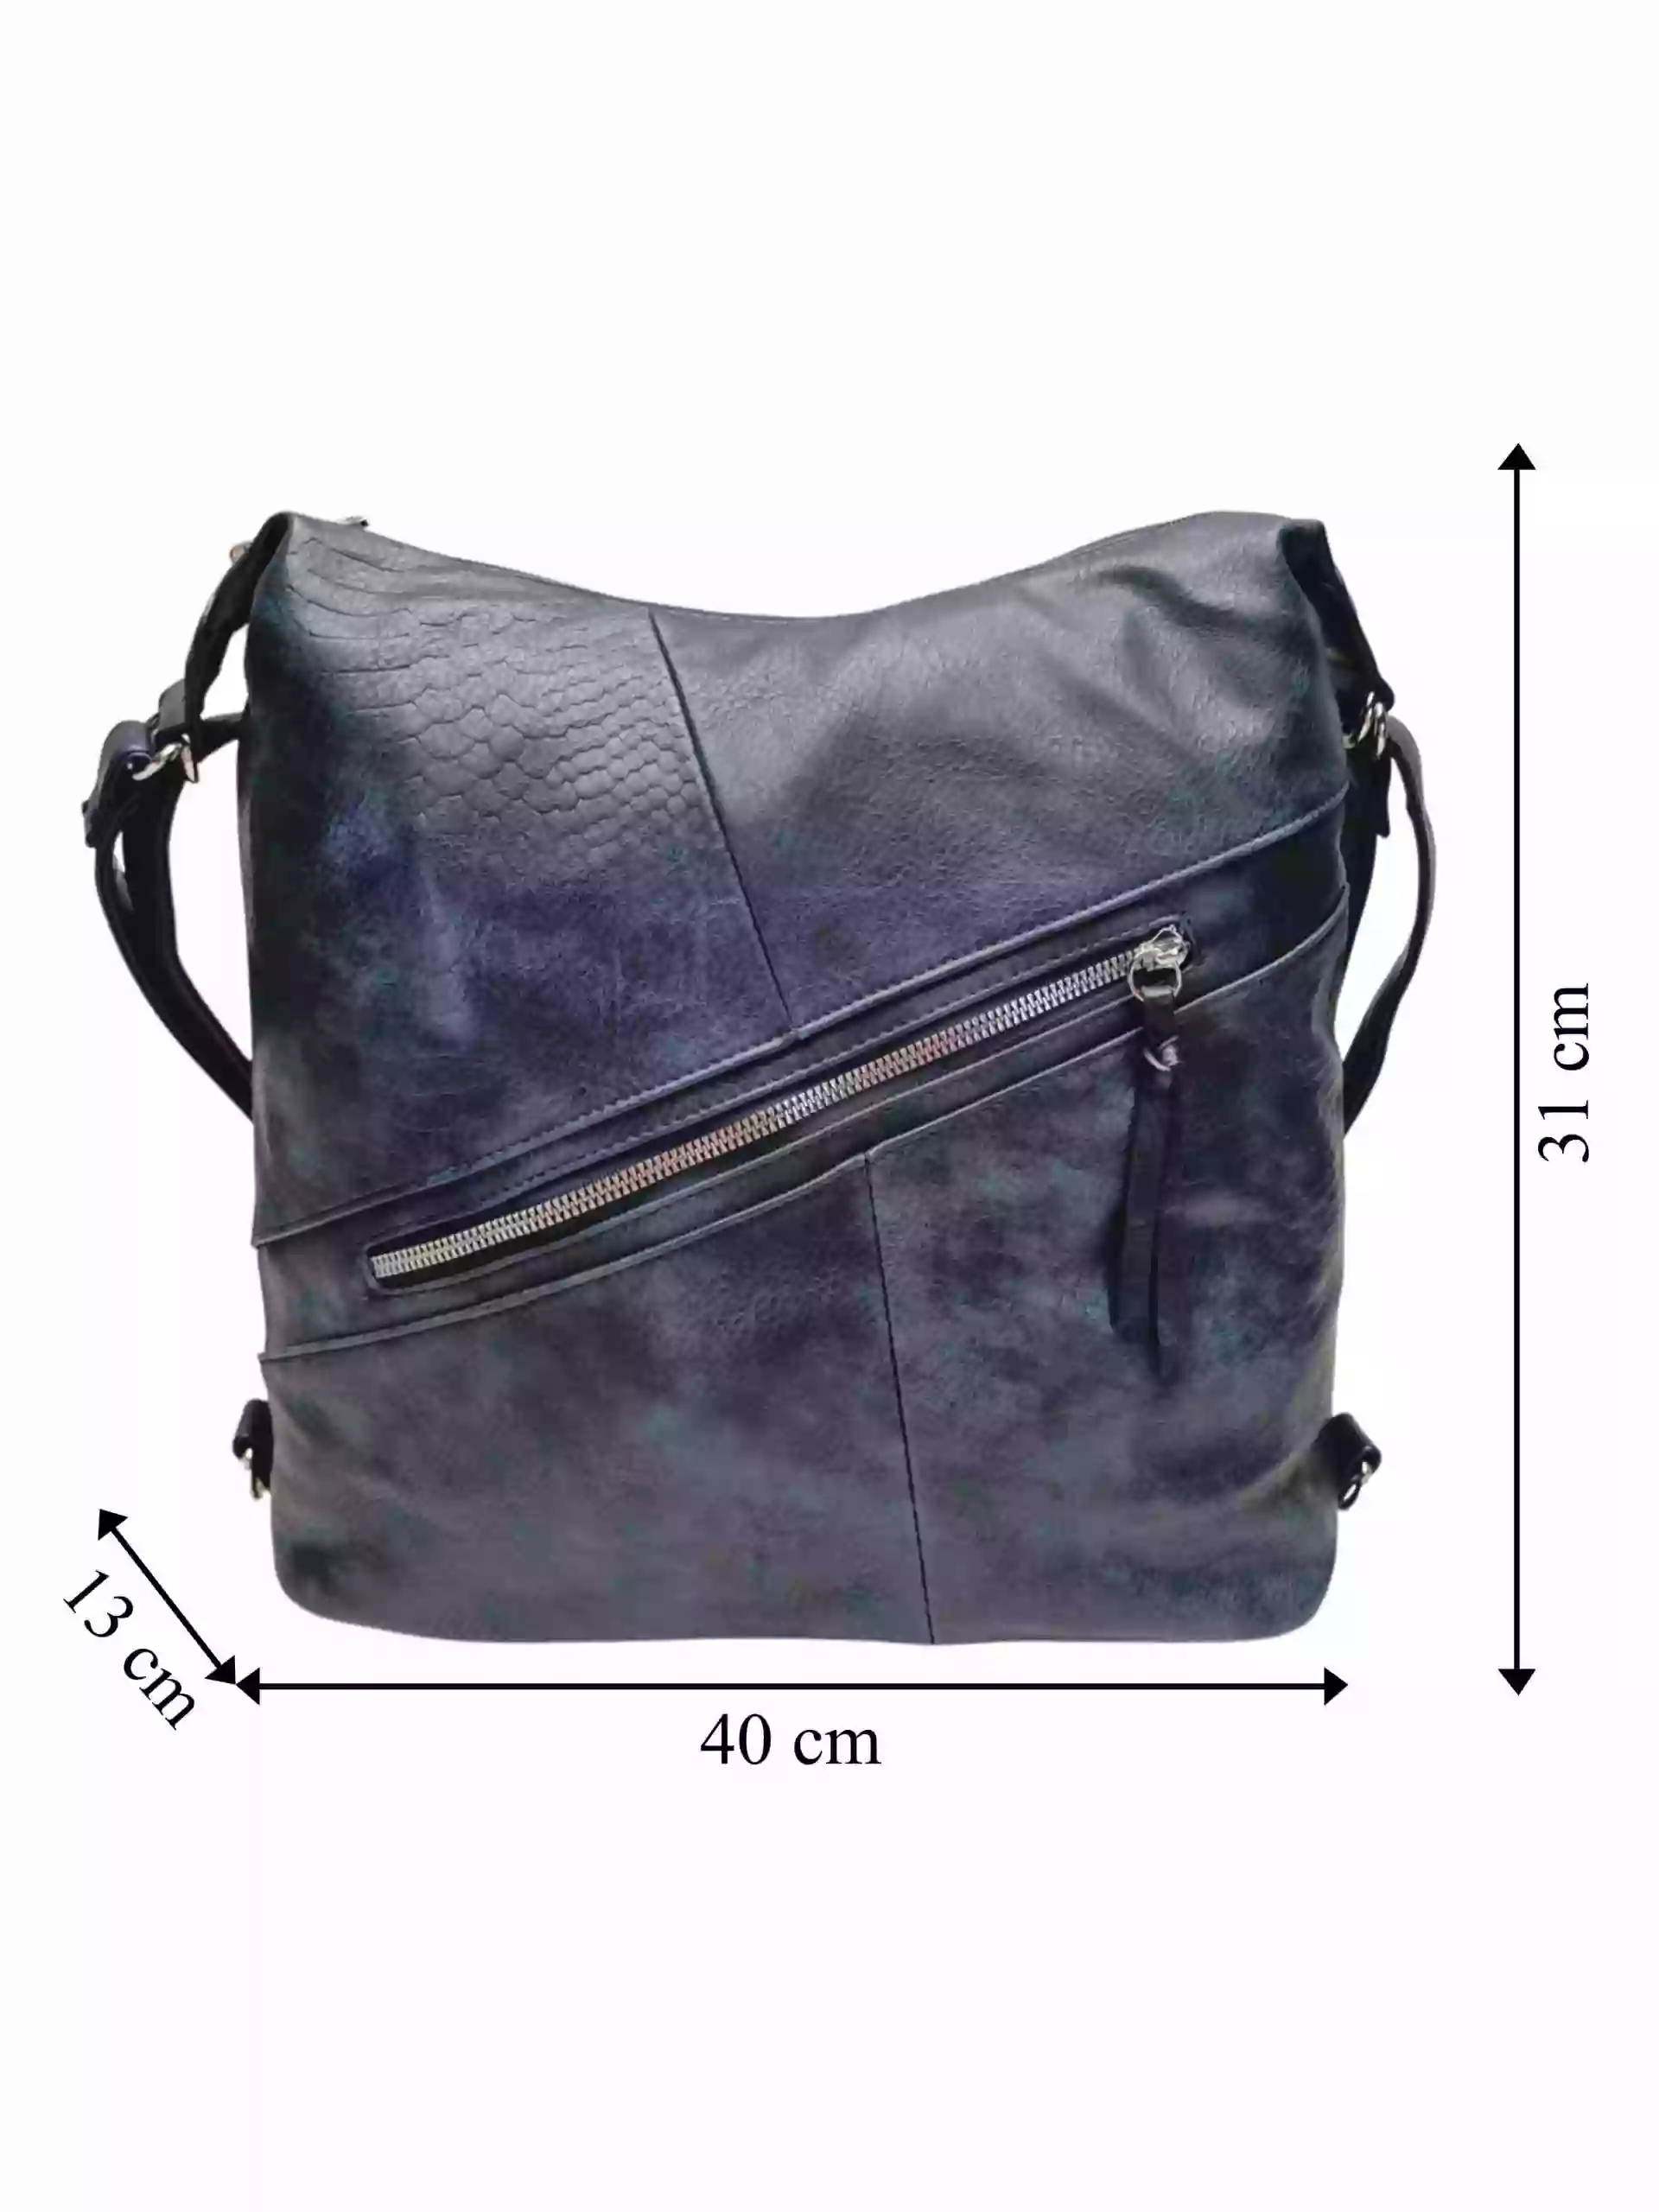 Velký tmavě modrý kabelko-batoh z eko kůže, Tapple, H18077, přední strana kabelko-batohu 2v1 s rozměry